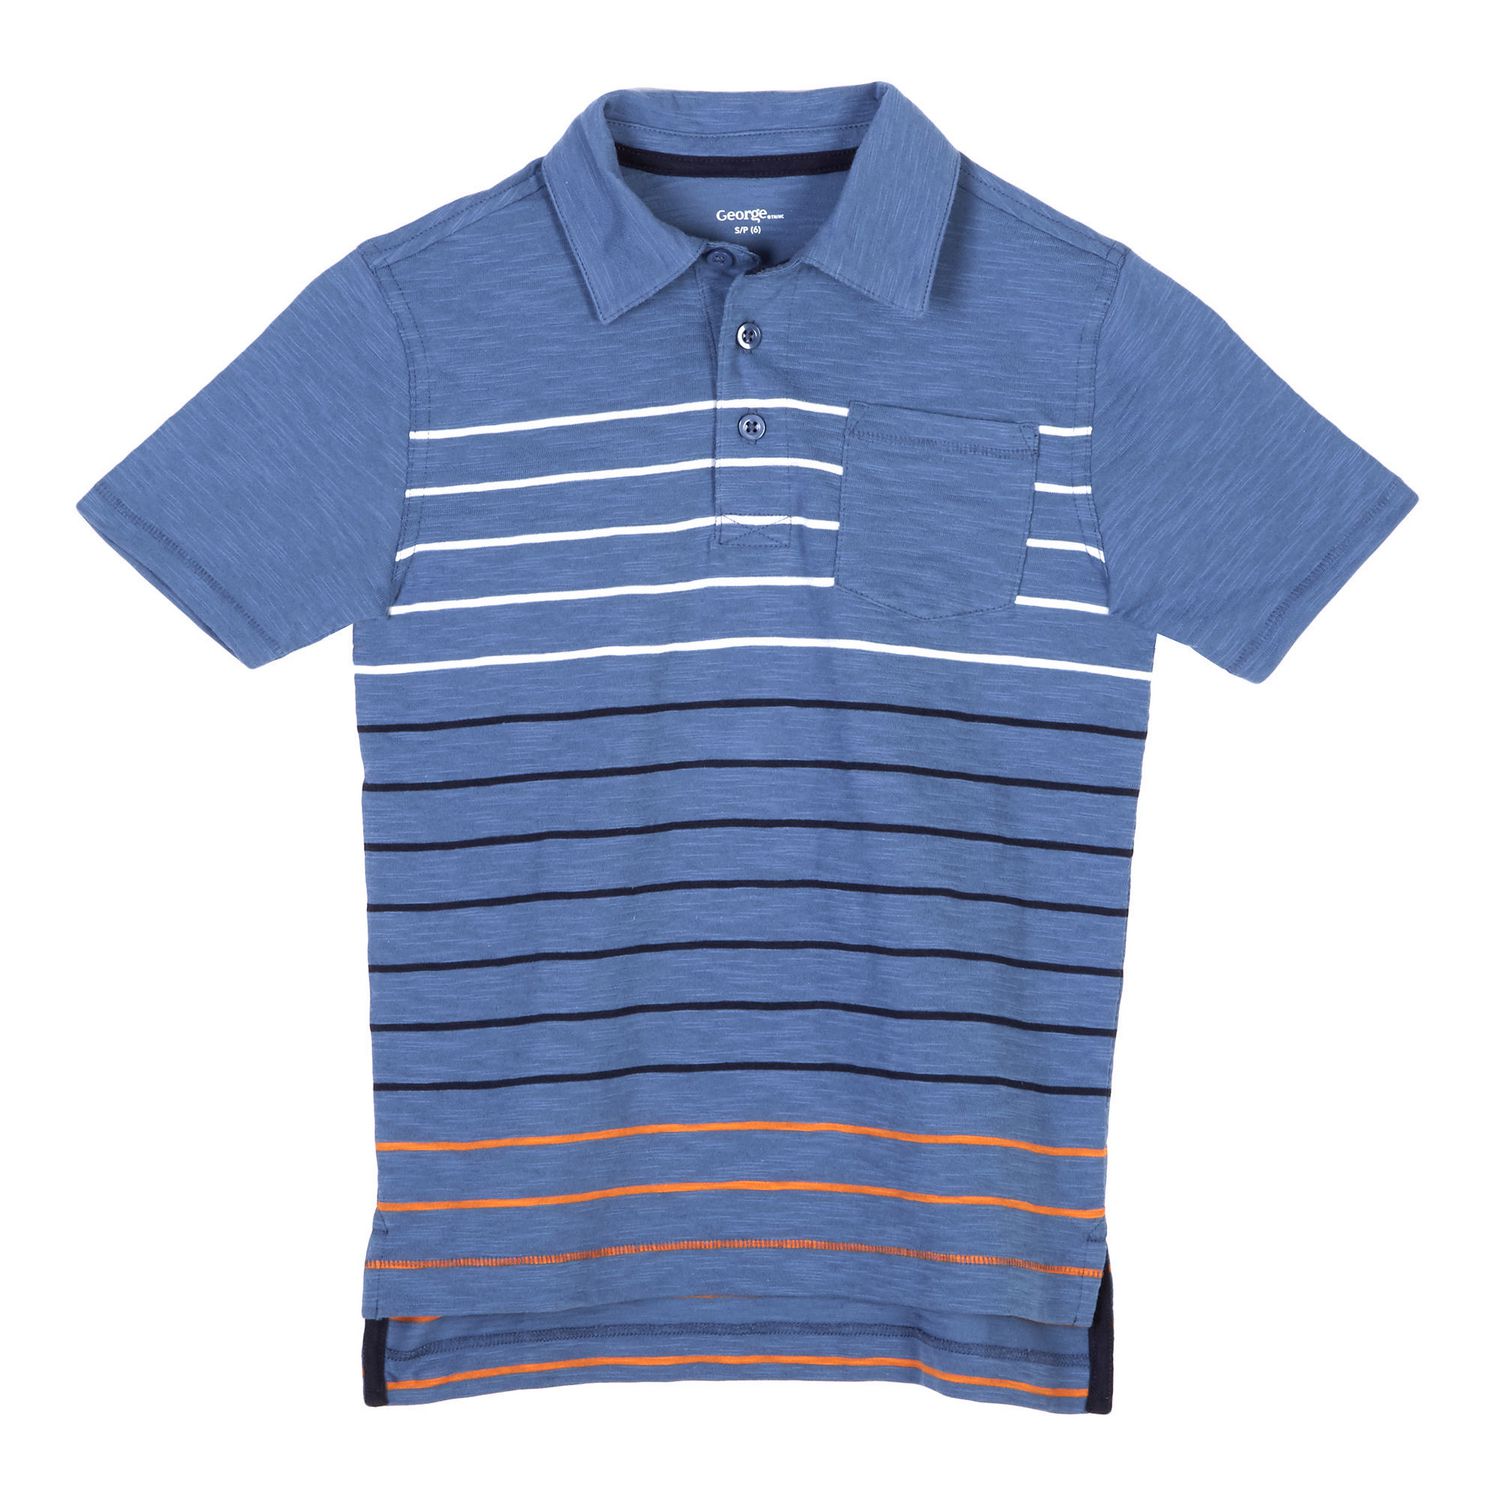 George Boys' Polo Shirt | Walmart Canada